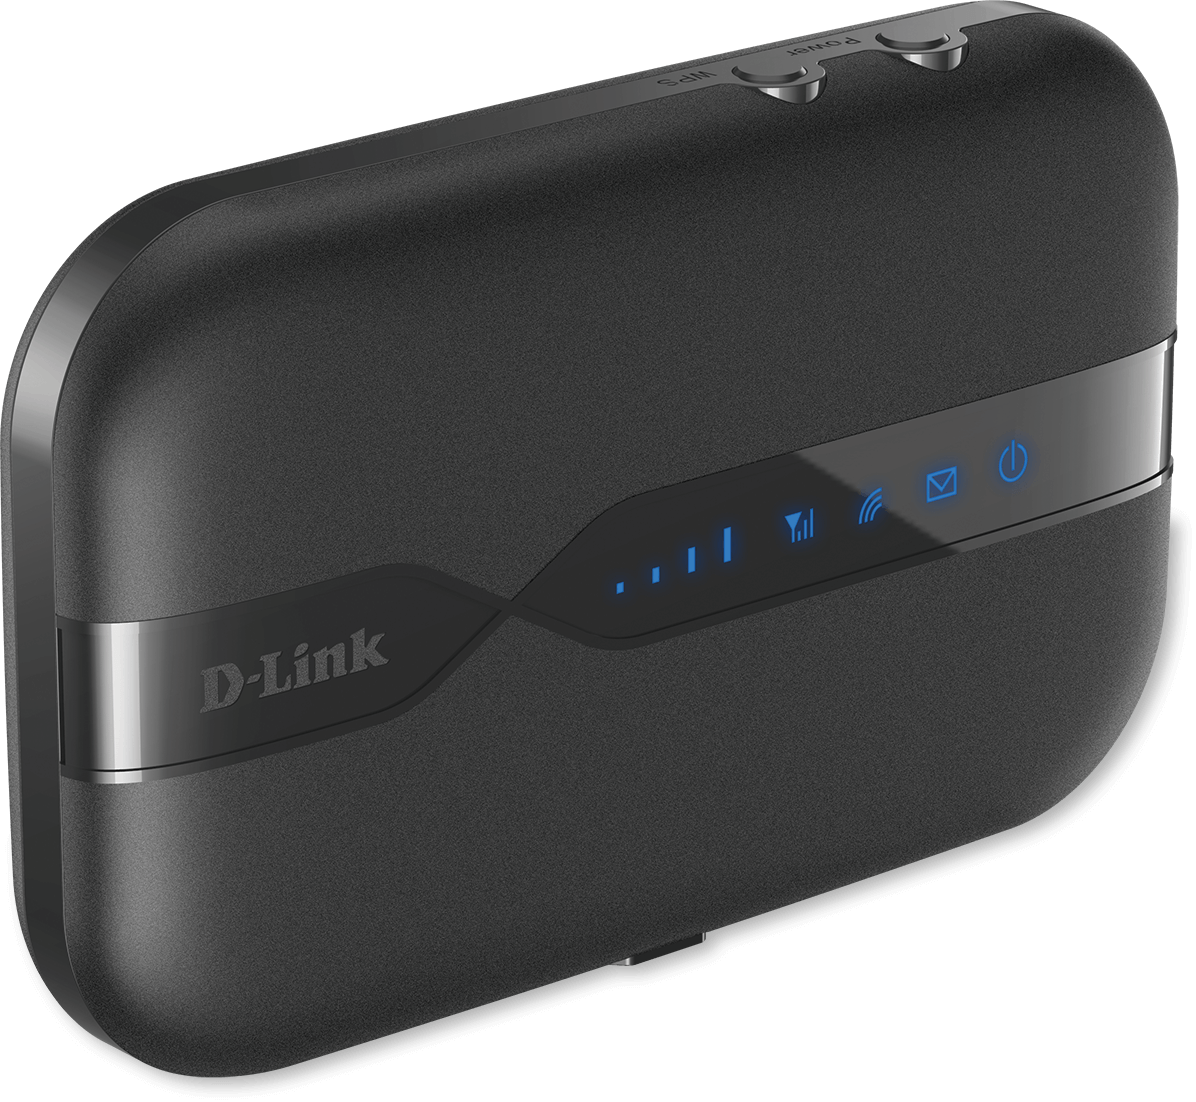 D-Link DWR-932 Router 4G LTE Portatile con Hotspot Wi-Fi 150 Mbps